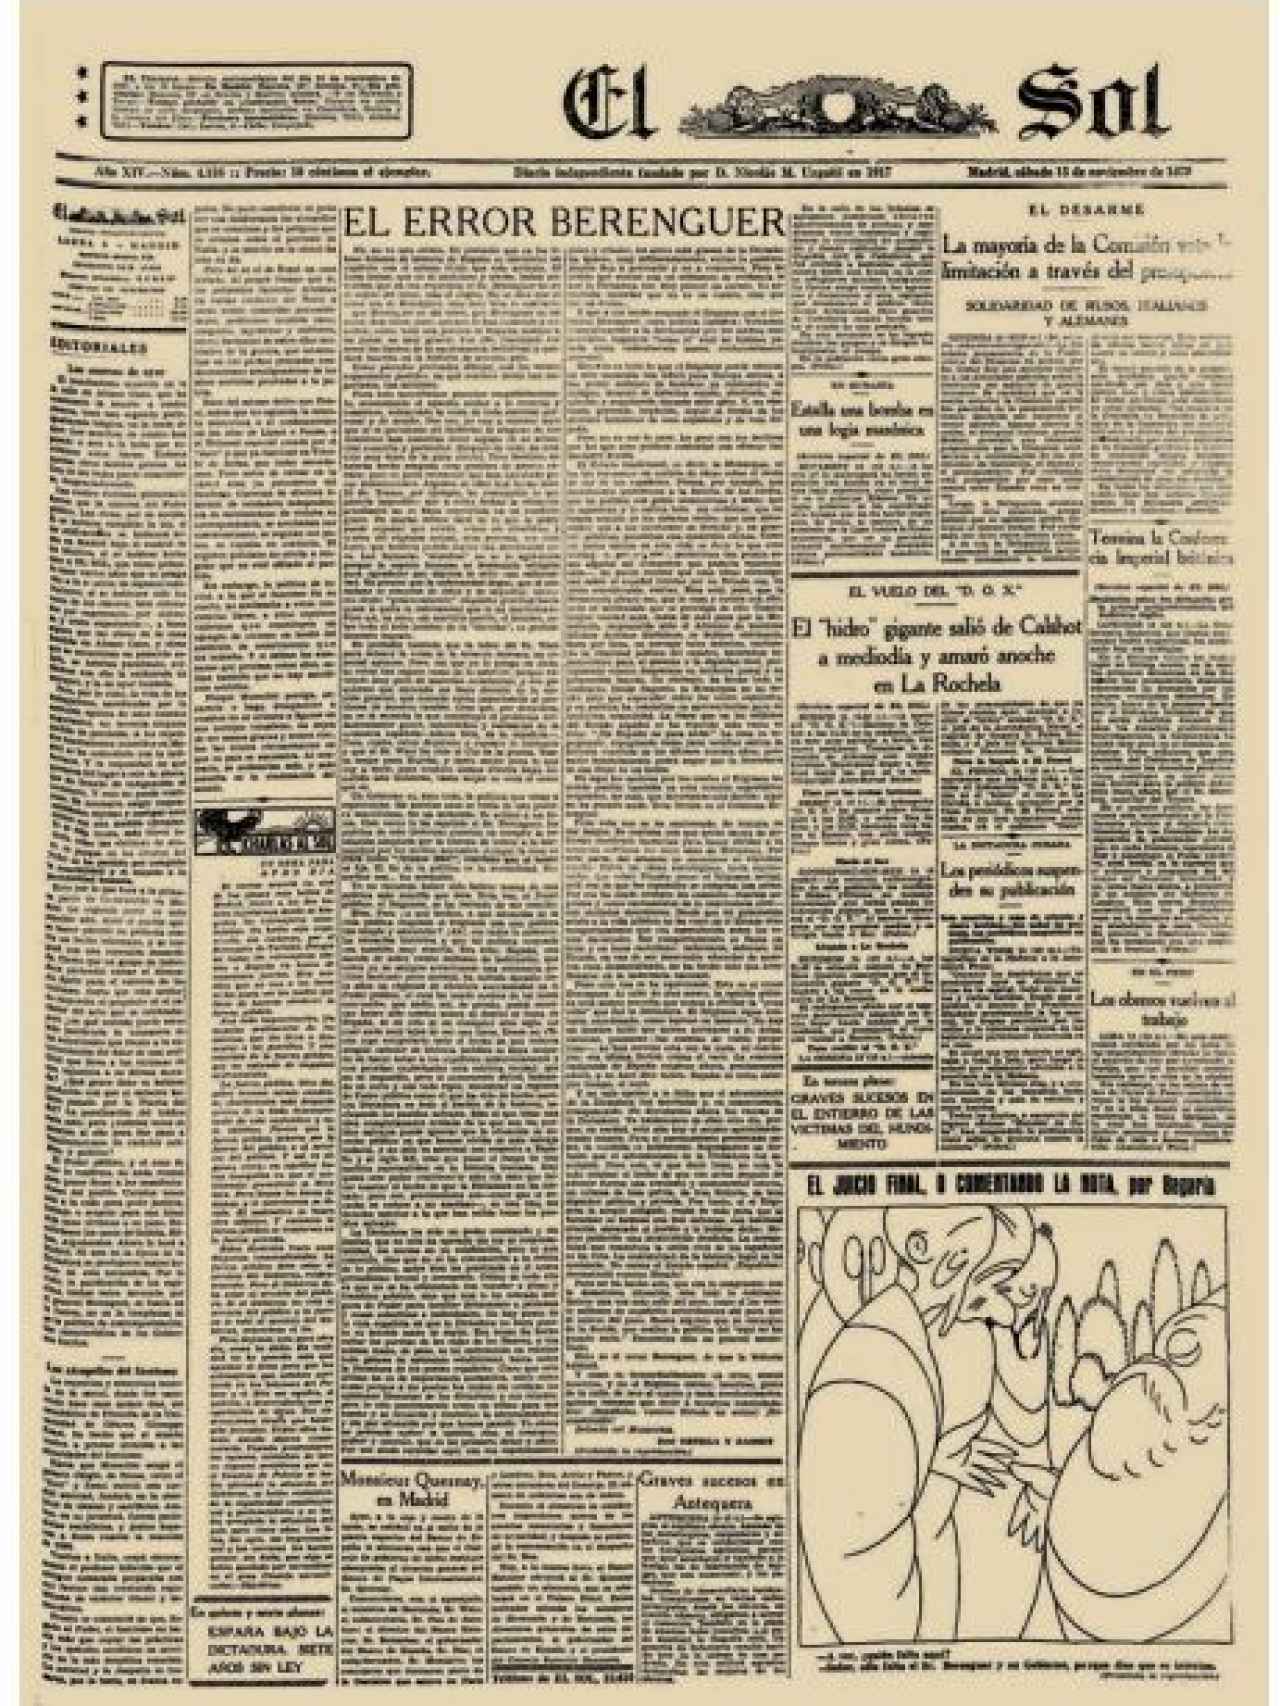 Primera página de El Sol, del 15 de noviembre de 1930, con el polémico artículo de Ortega y Gasset.